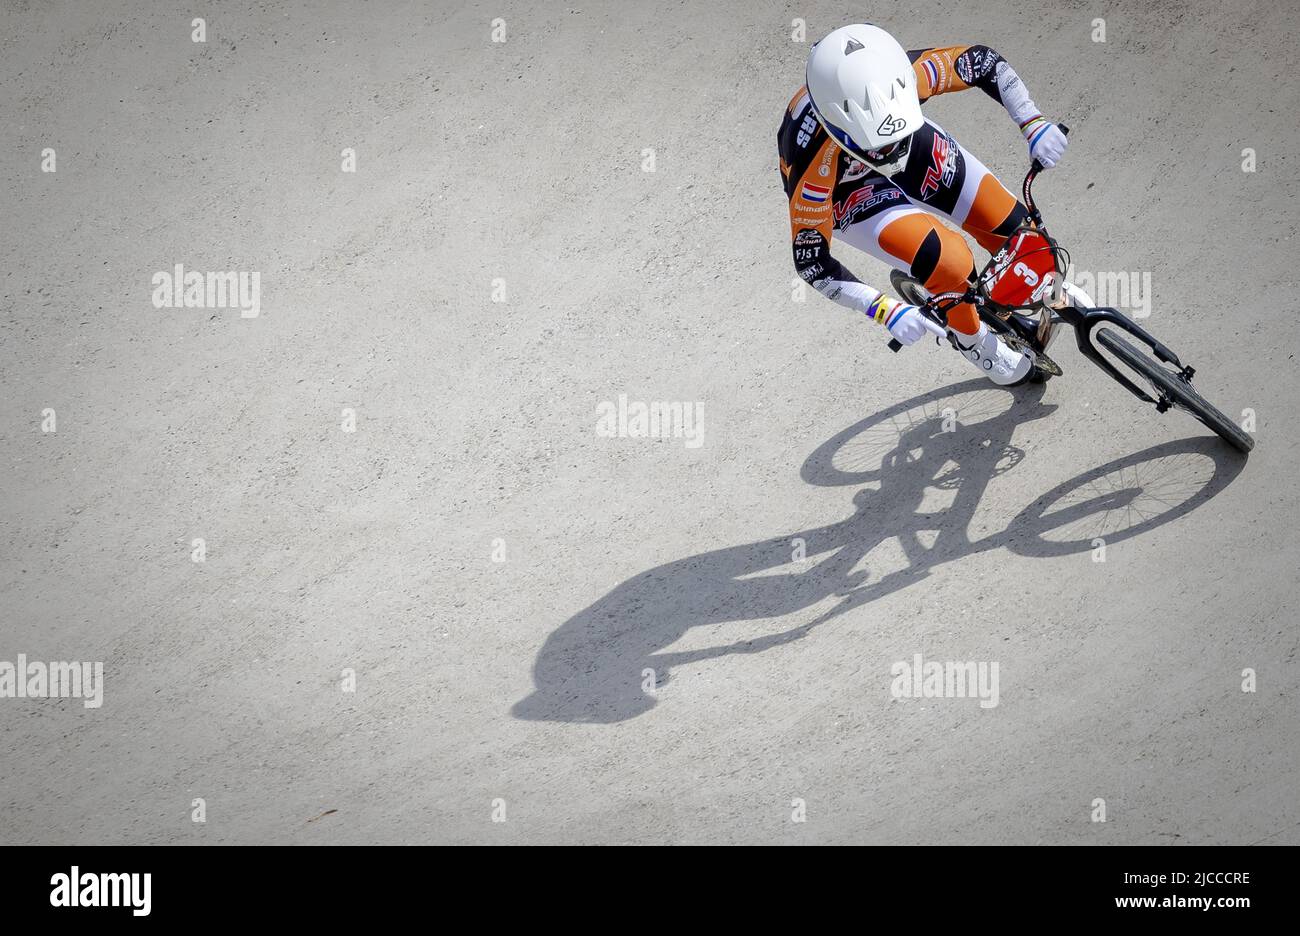 PAPENDAL - Laura Smulders (3) in azione durante la quarta gara di Coppa del mondo BMX. ANP ROBIN VAN LONKHUIJSEN Foto Stock